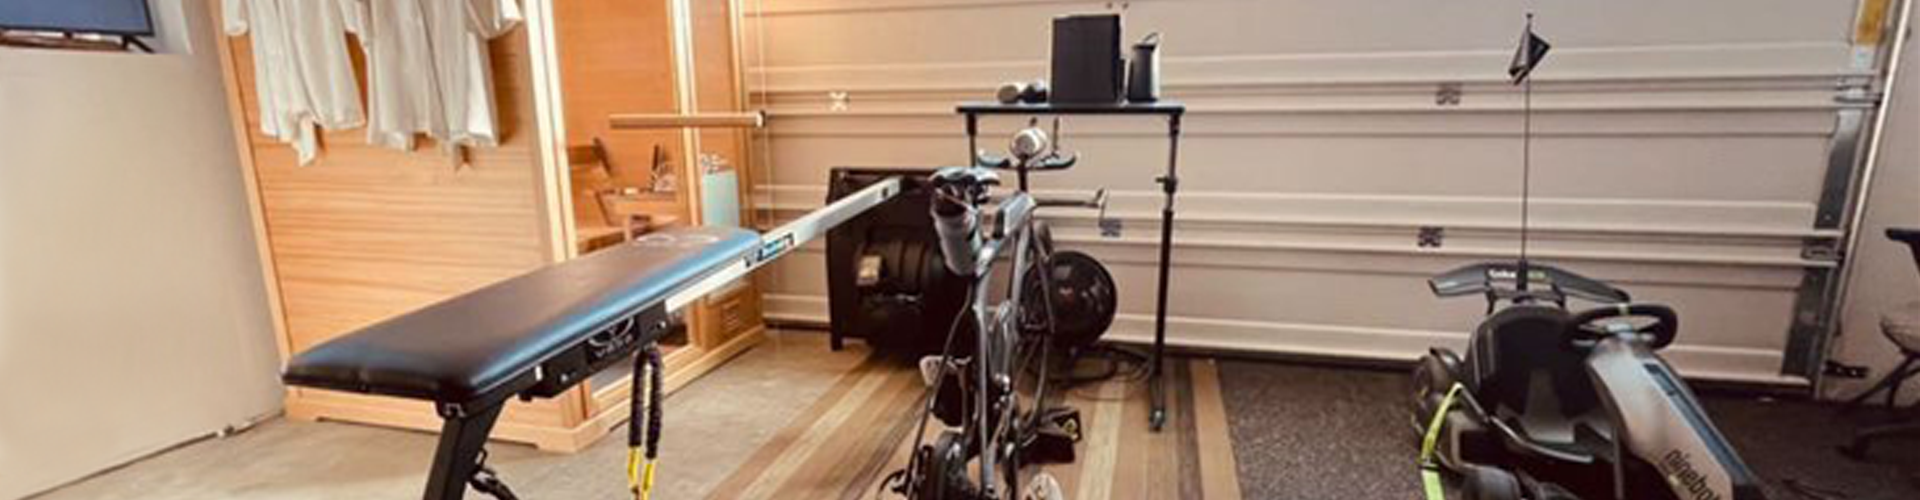 Sauna in Garage Gym is a Key Resource for Triathlete’s Training & LifestyleImage